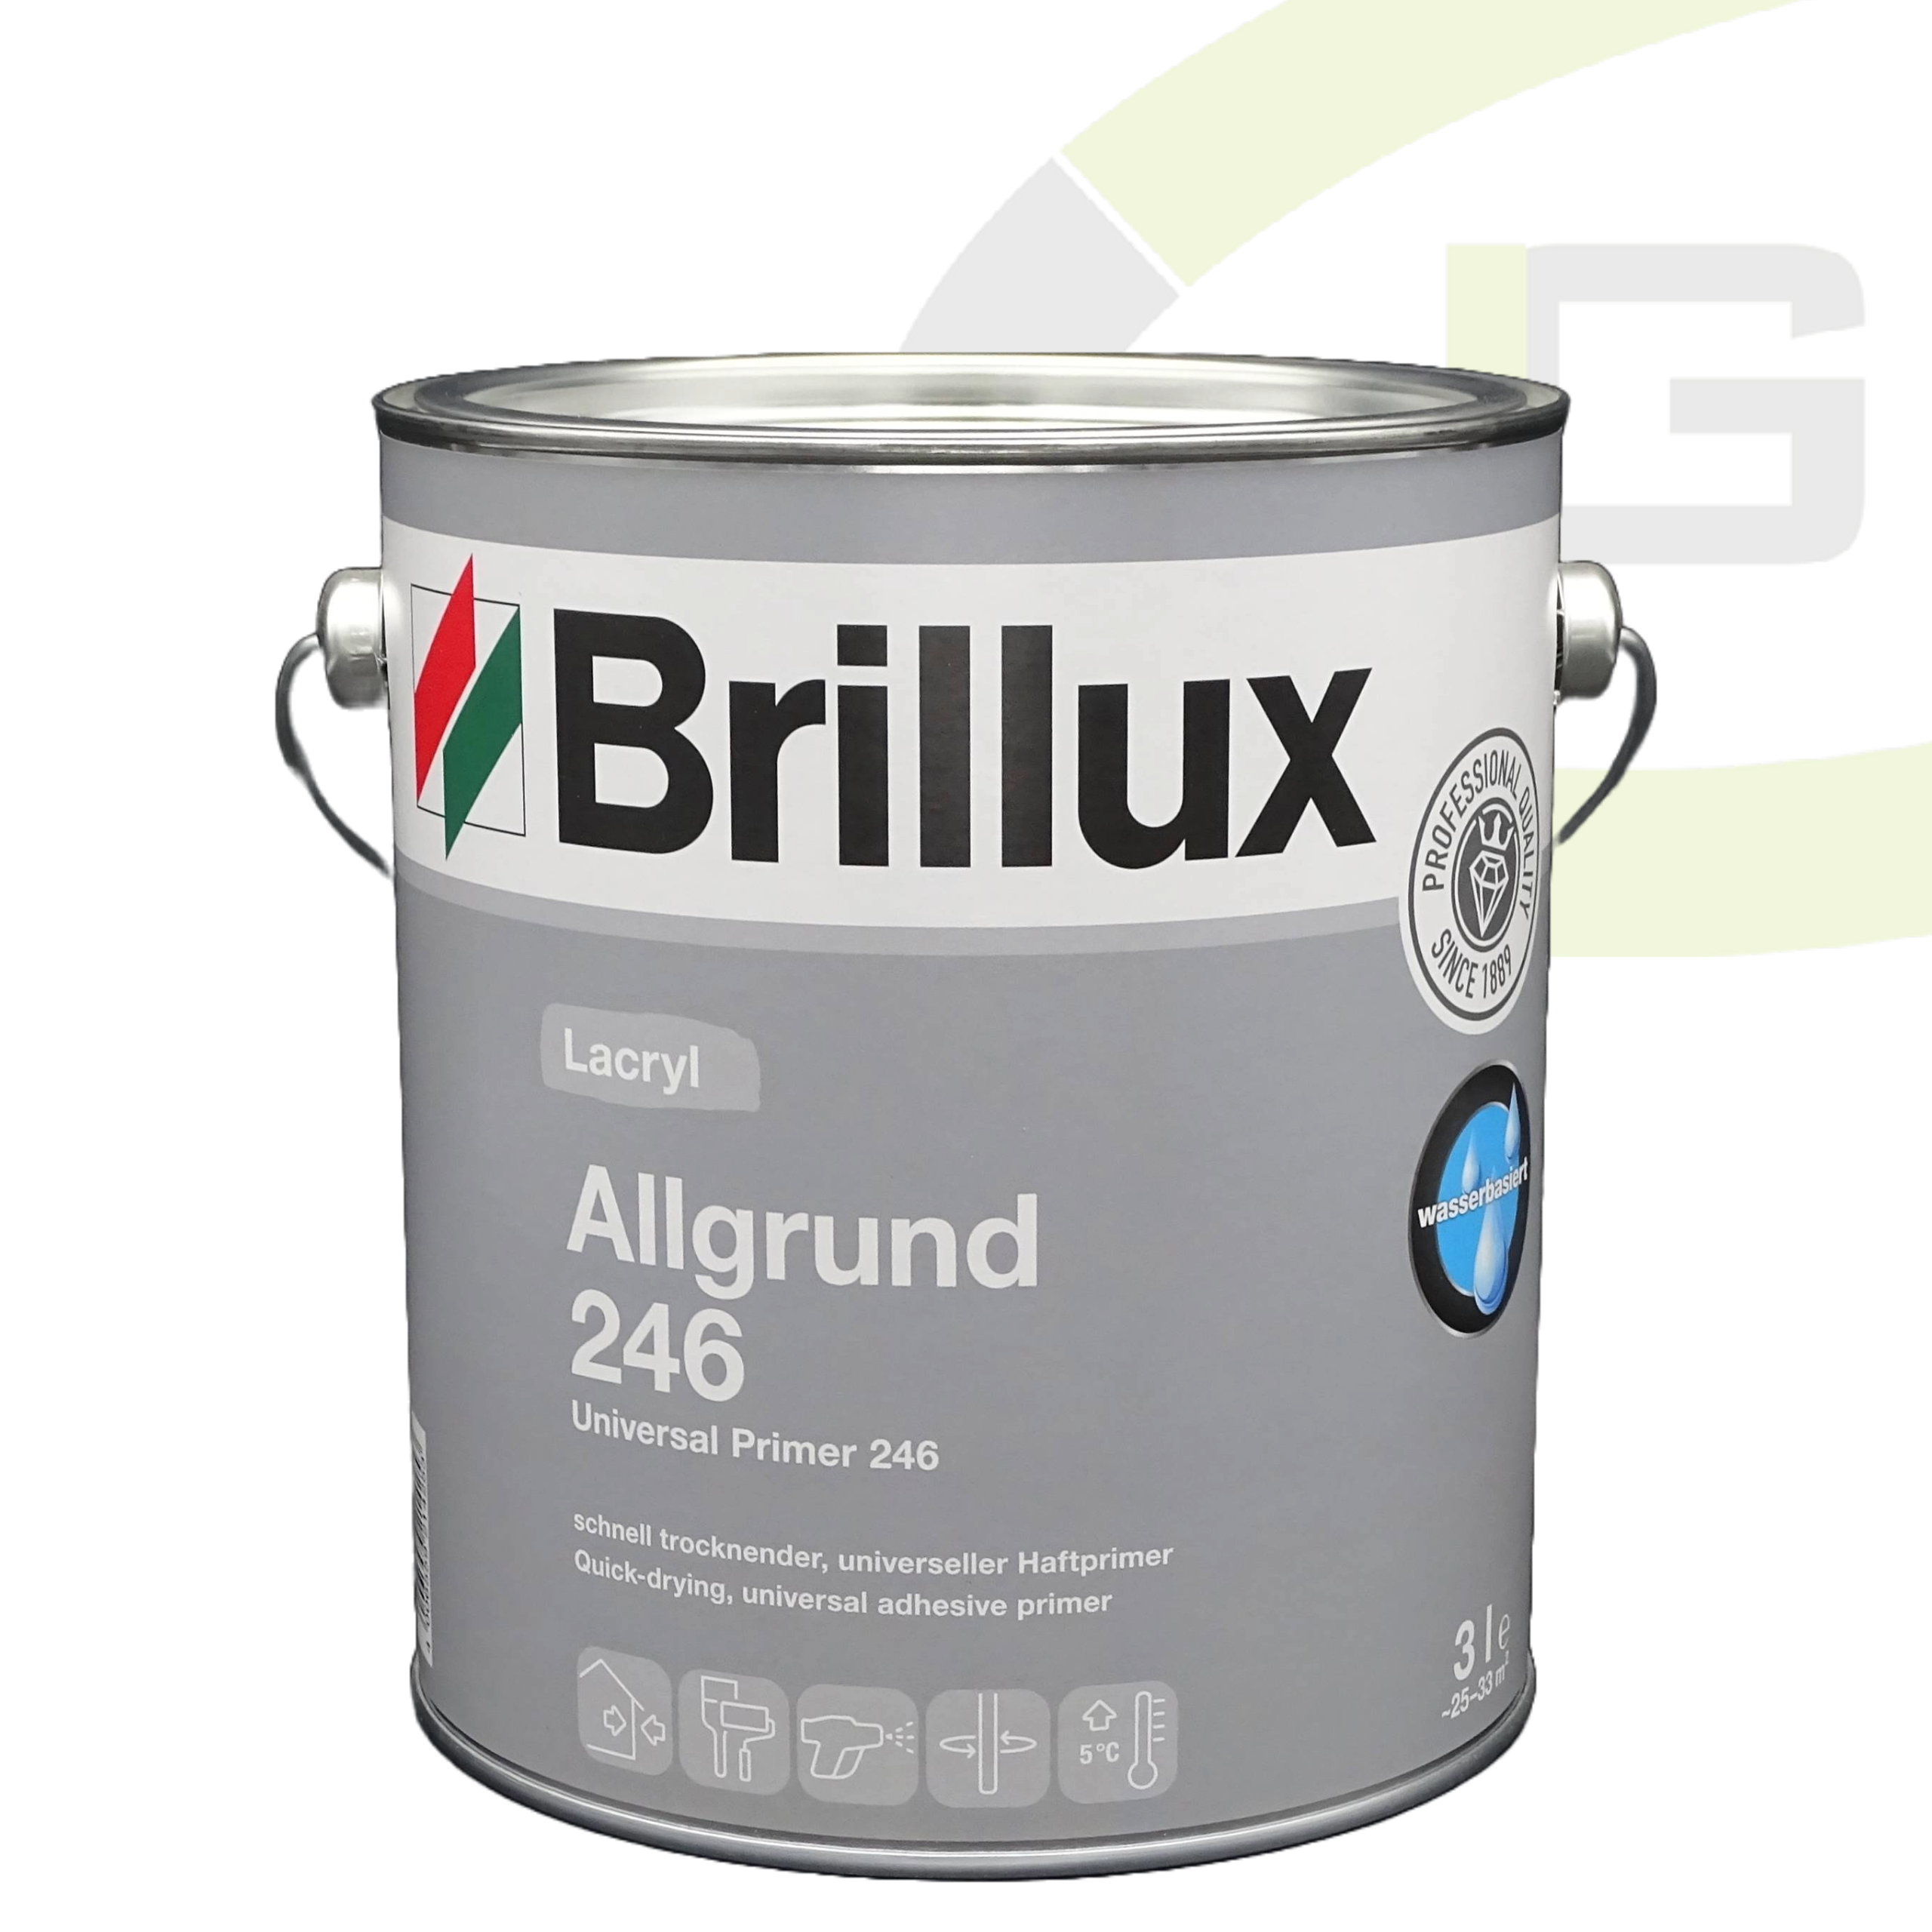 Brillux Lacryl Allgrund 246 weiß - 3.00 LTR / Wasserbasierter Primer